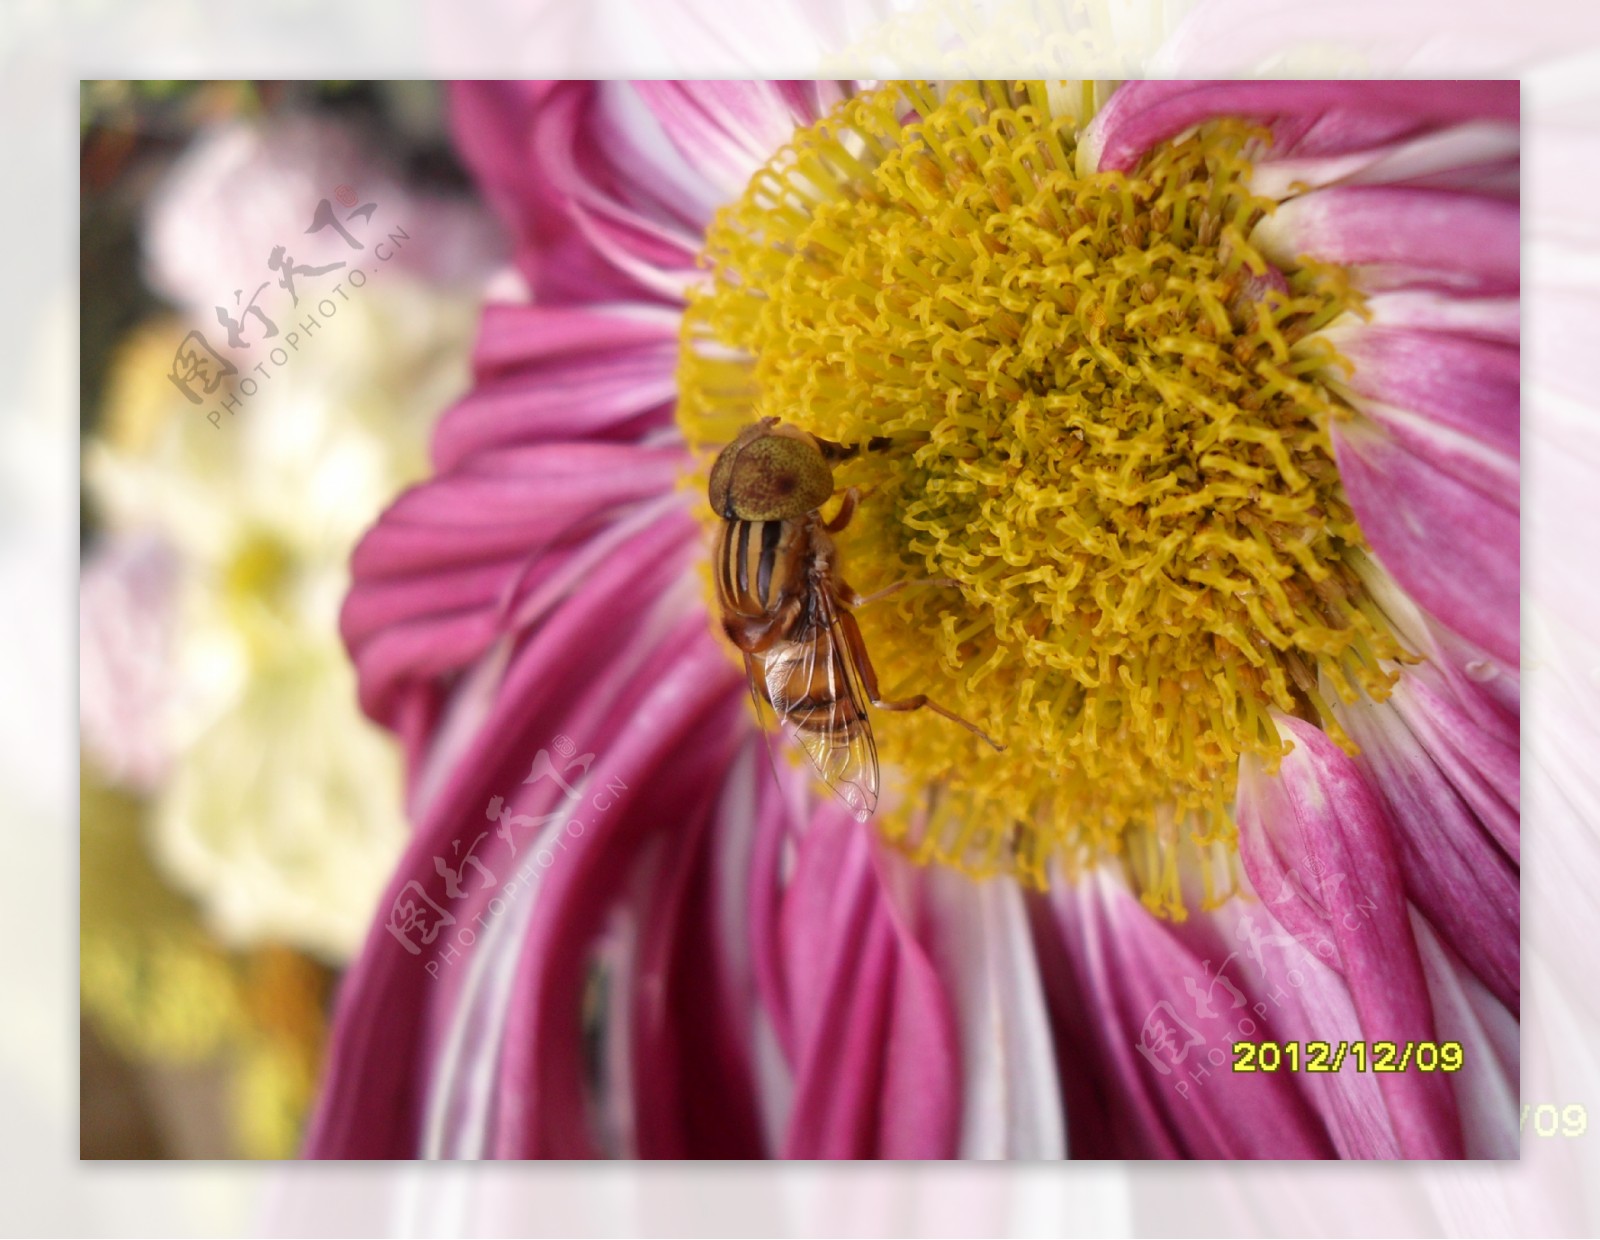 菊花与蜜蜂图片